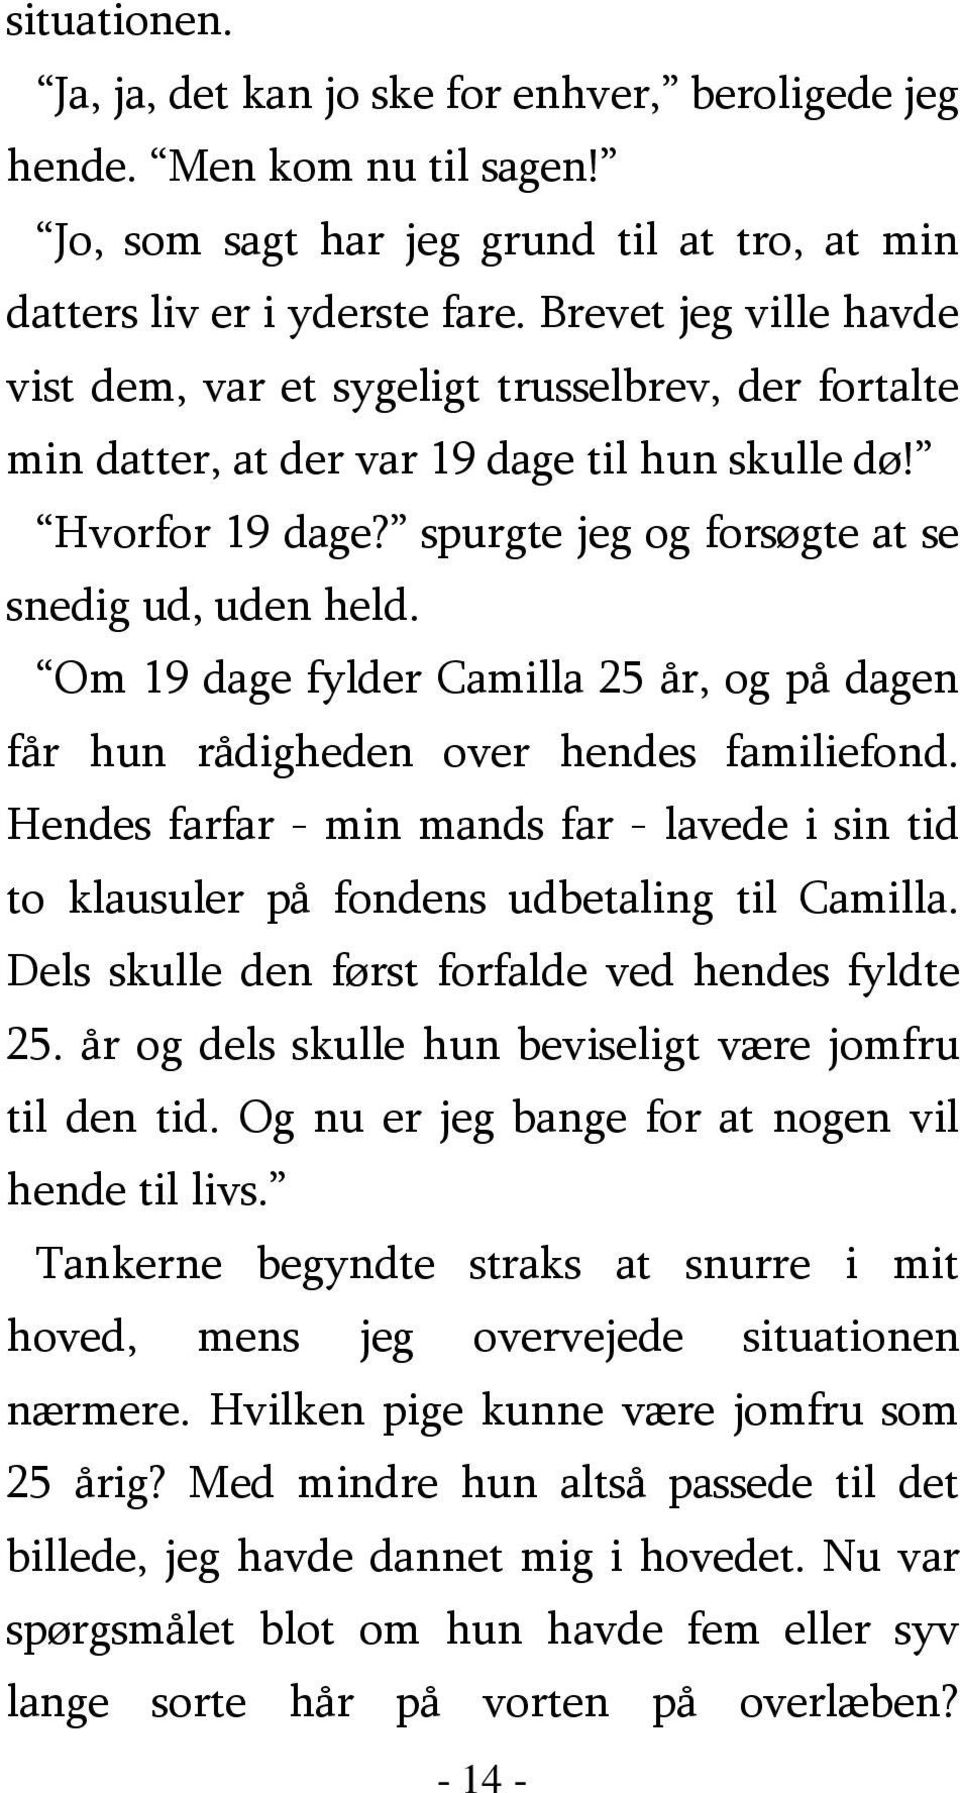 Om 19 dage fylder Camilla 25 år, og på dagen får hun rådigheden over hendes familiefond. Hendes farfar - min mands far - lavede i sin tid to klausuler på fondens udbetaling til Camilla.